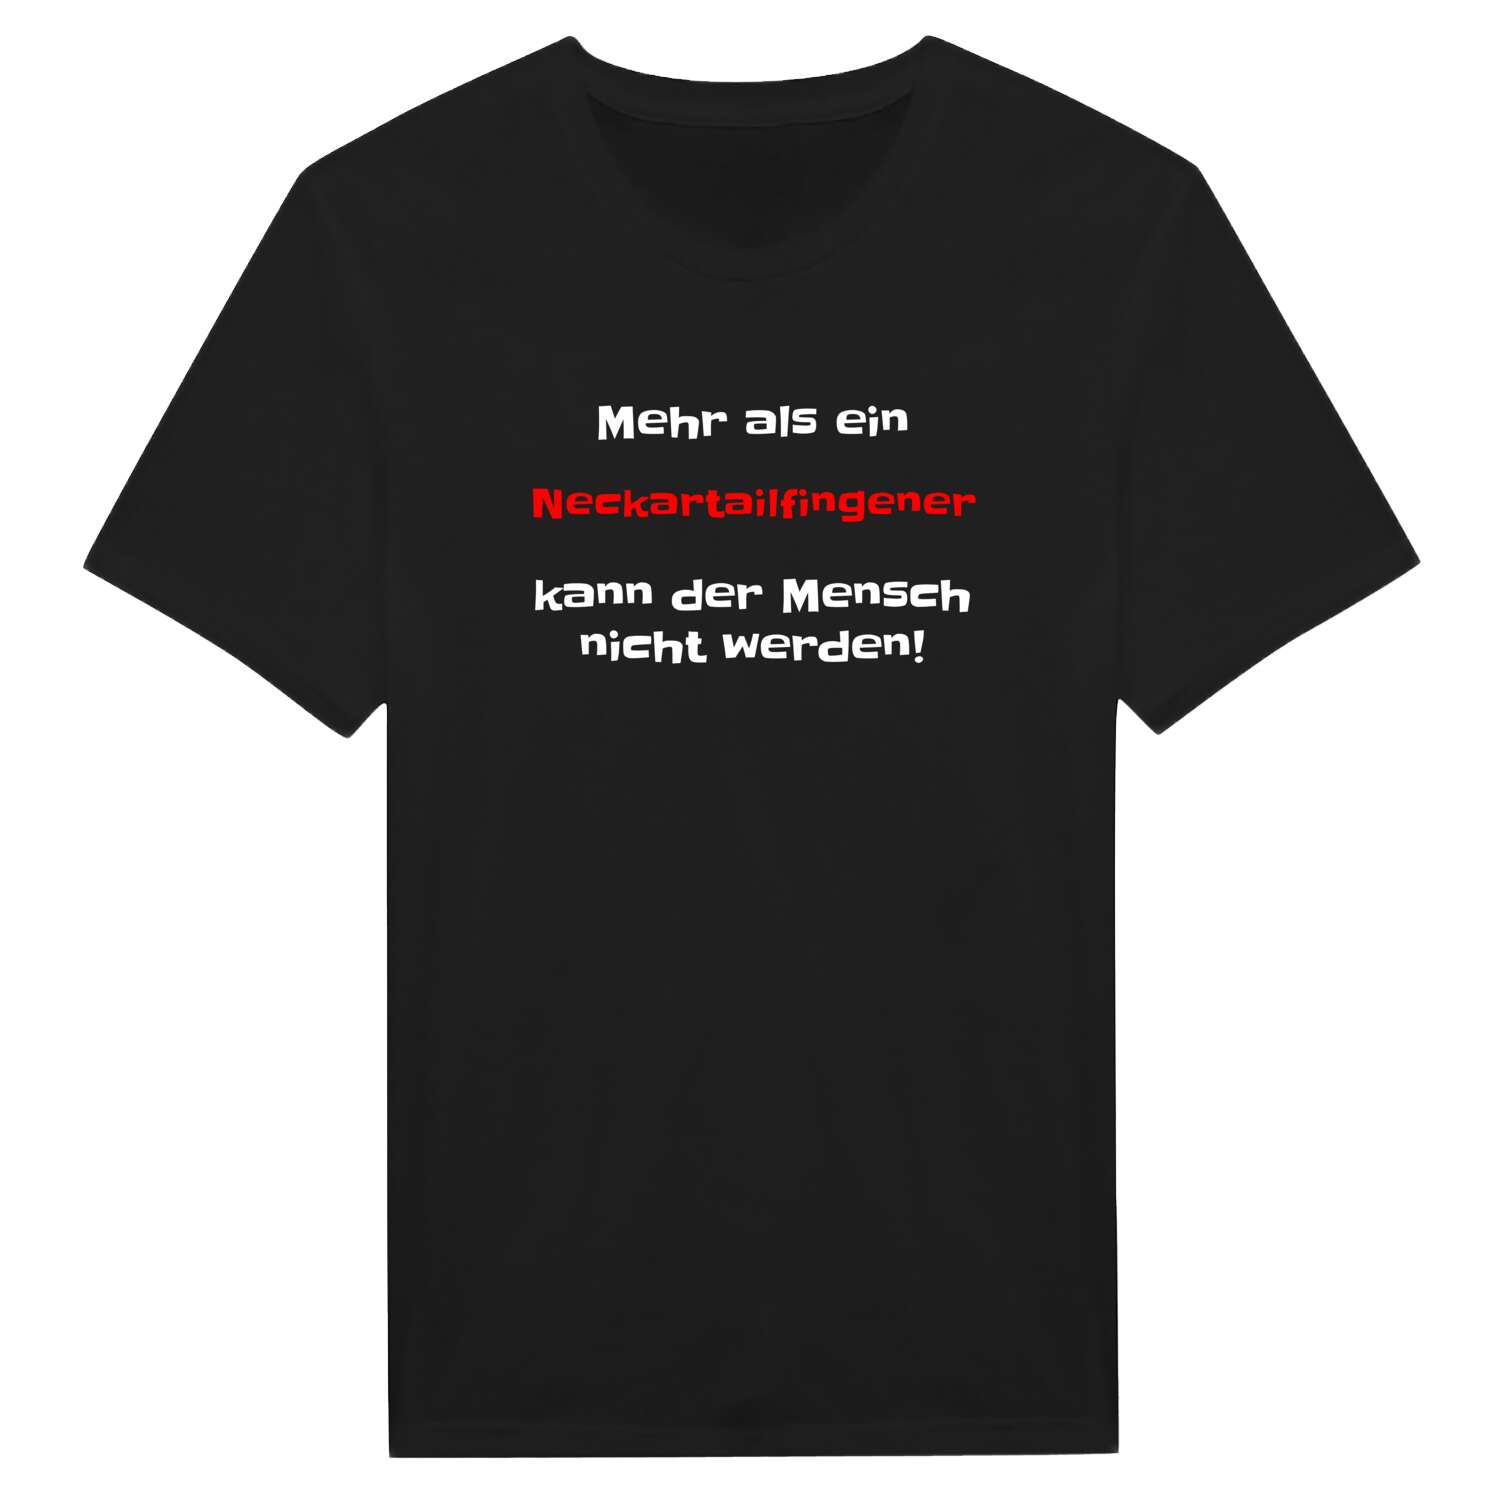 Neckartailfingen T-Shirt »Mehr als ein«